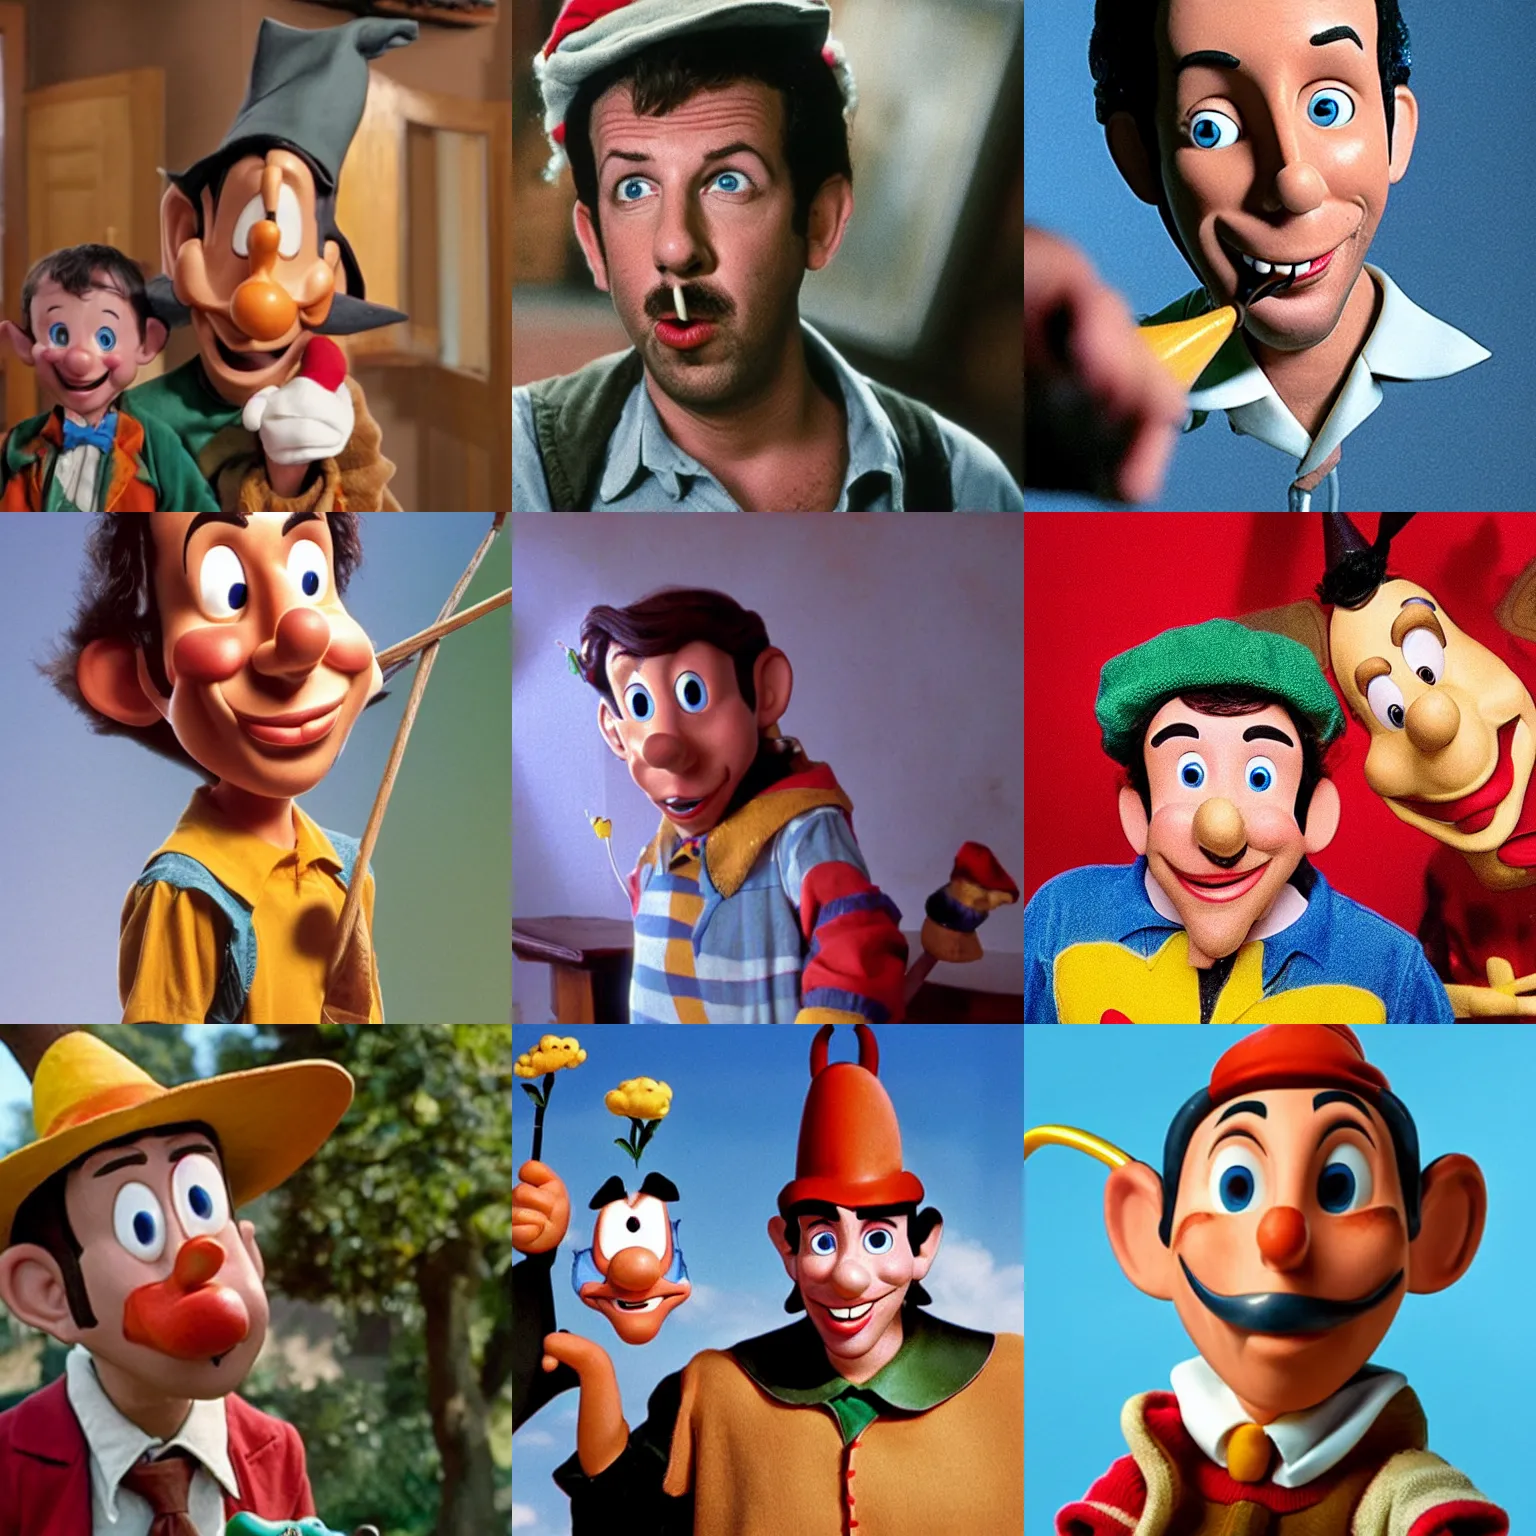 Prompt: Adam Sandler as Pinocchio